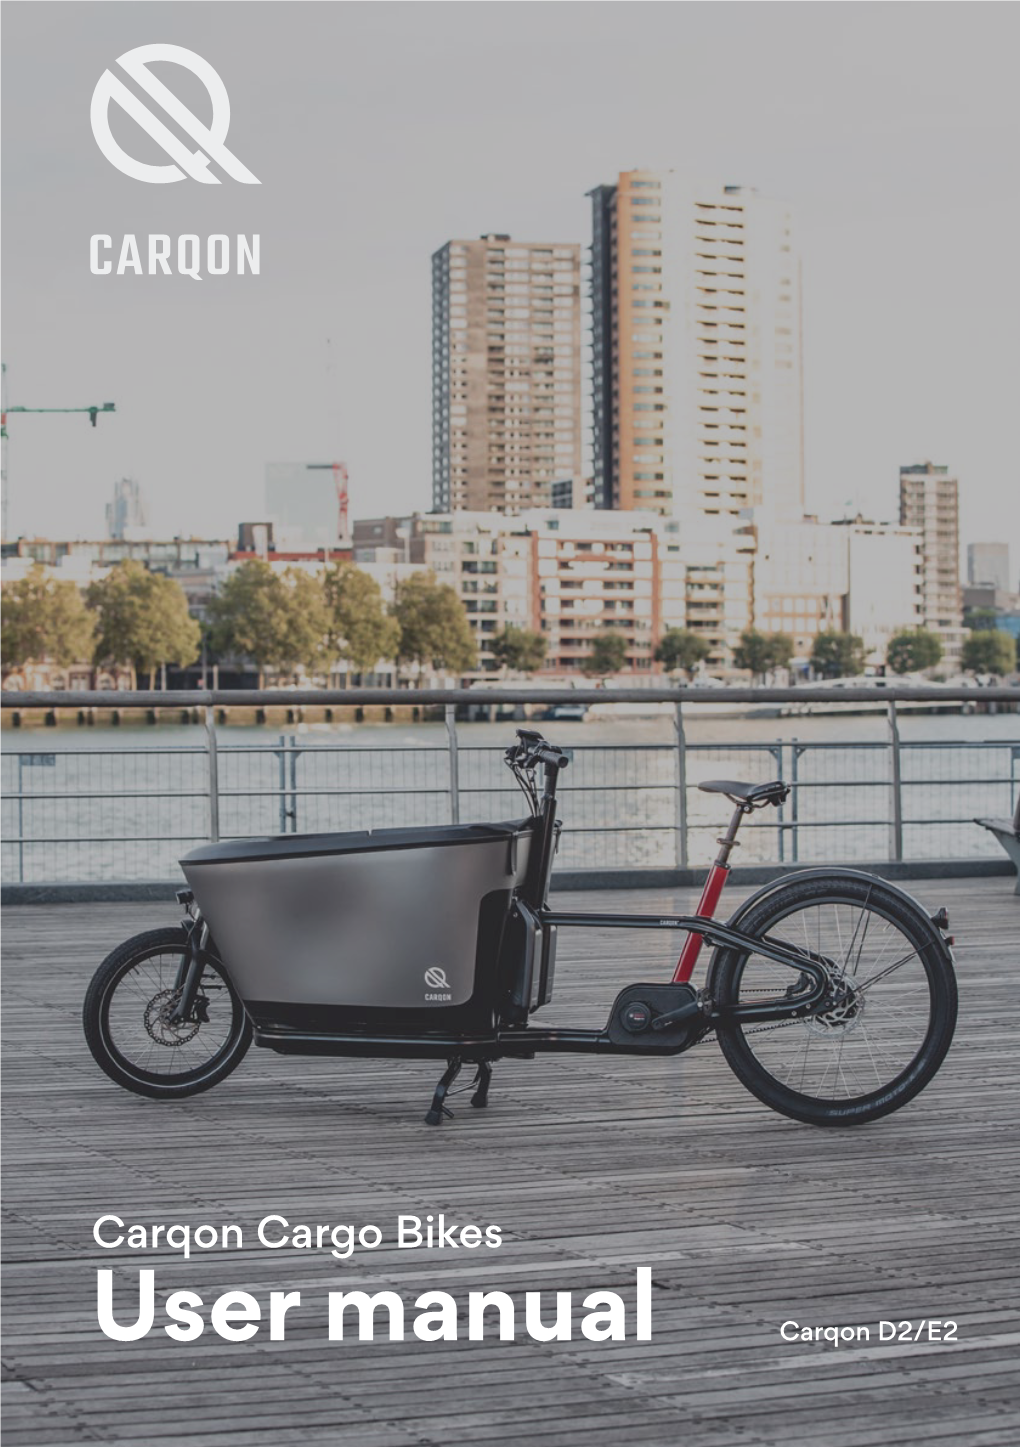 Carqon Cargo Bikes